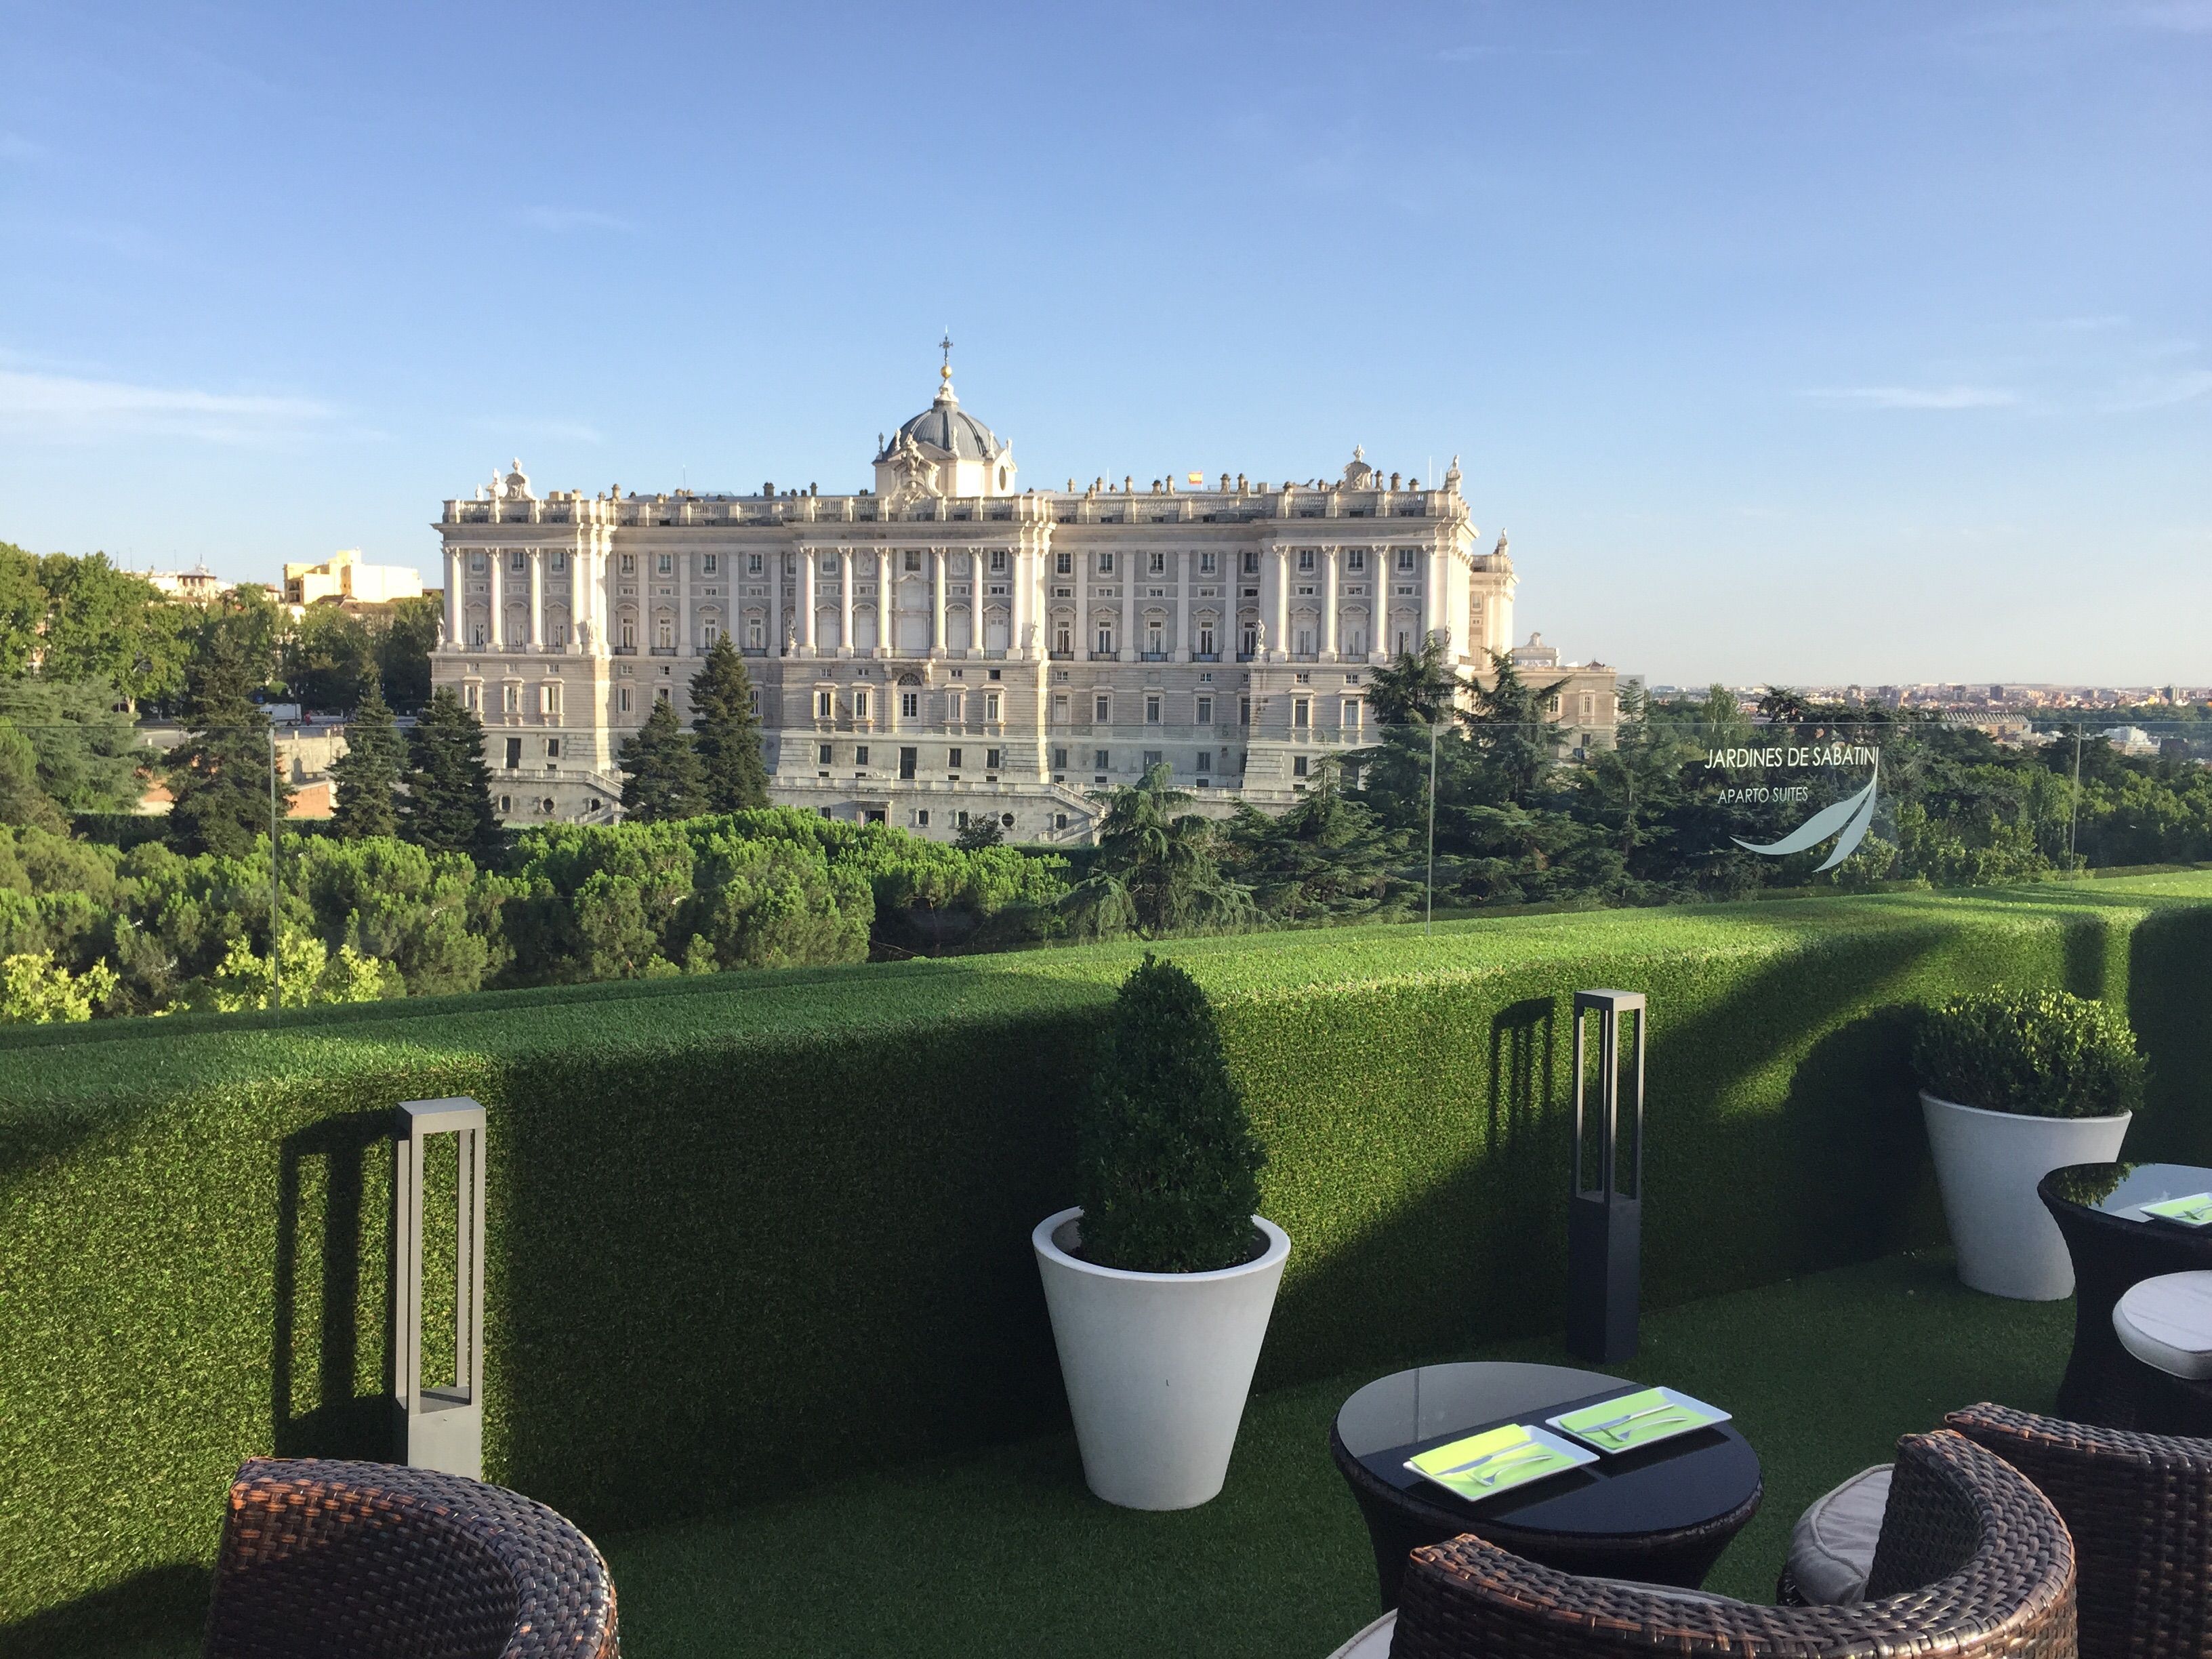 Las mejores vistas de Madrid se disfrutan desde sus terrazas. Foto: Terraza Jardines de Sabatini